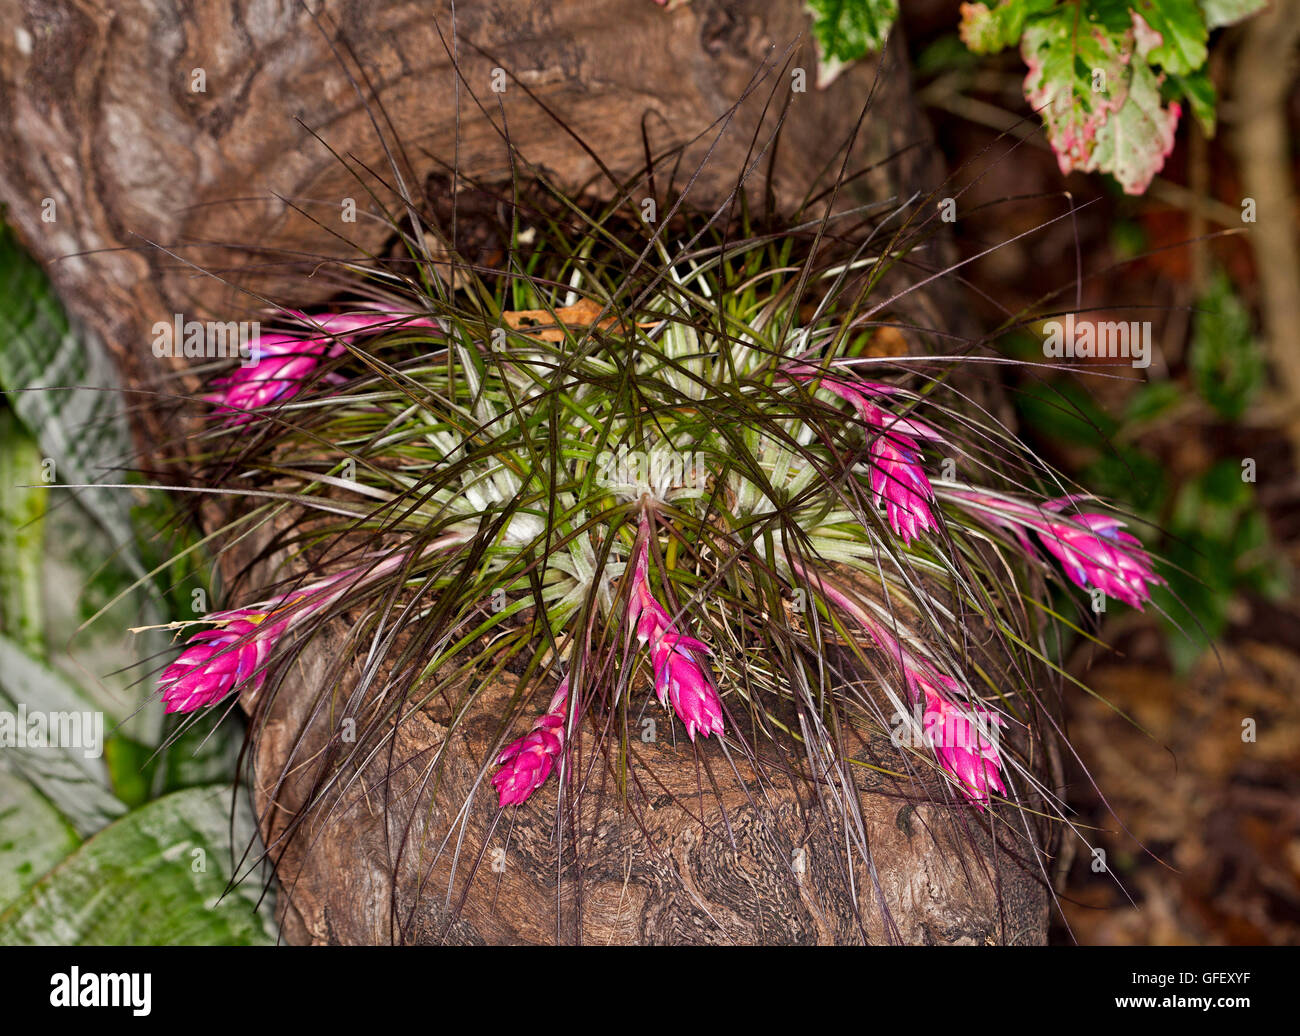 Cluster von Bromelien / Luft-Anlage Tillandsia Stricta mit Masse von atemberaubenden rosa und lila Blumen wachsen auf einem hölzernen stumpf Stockfoto